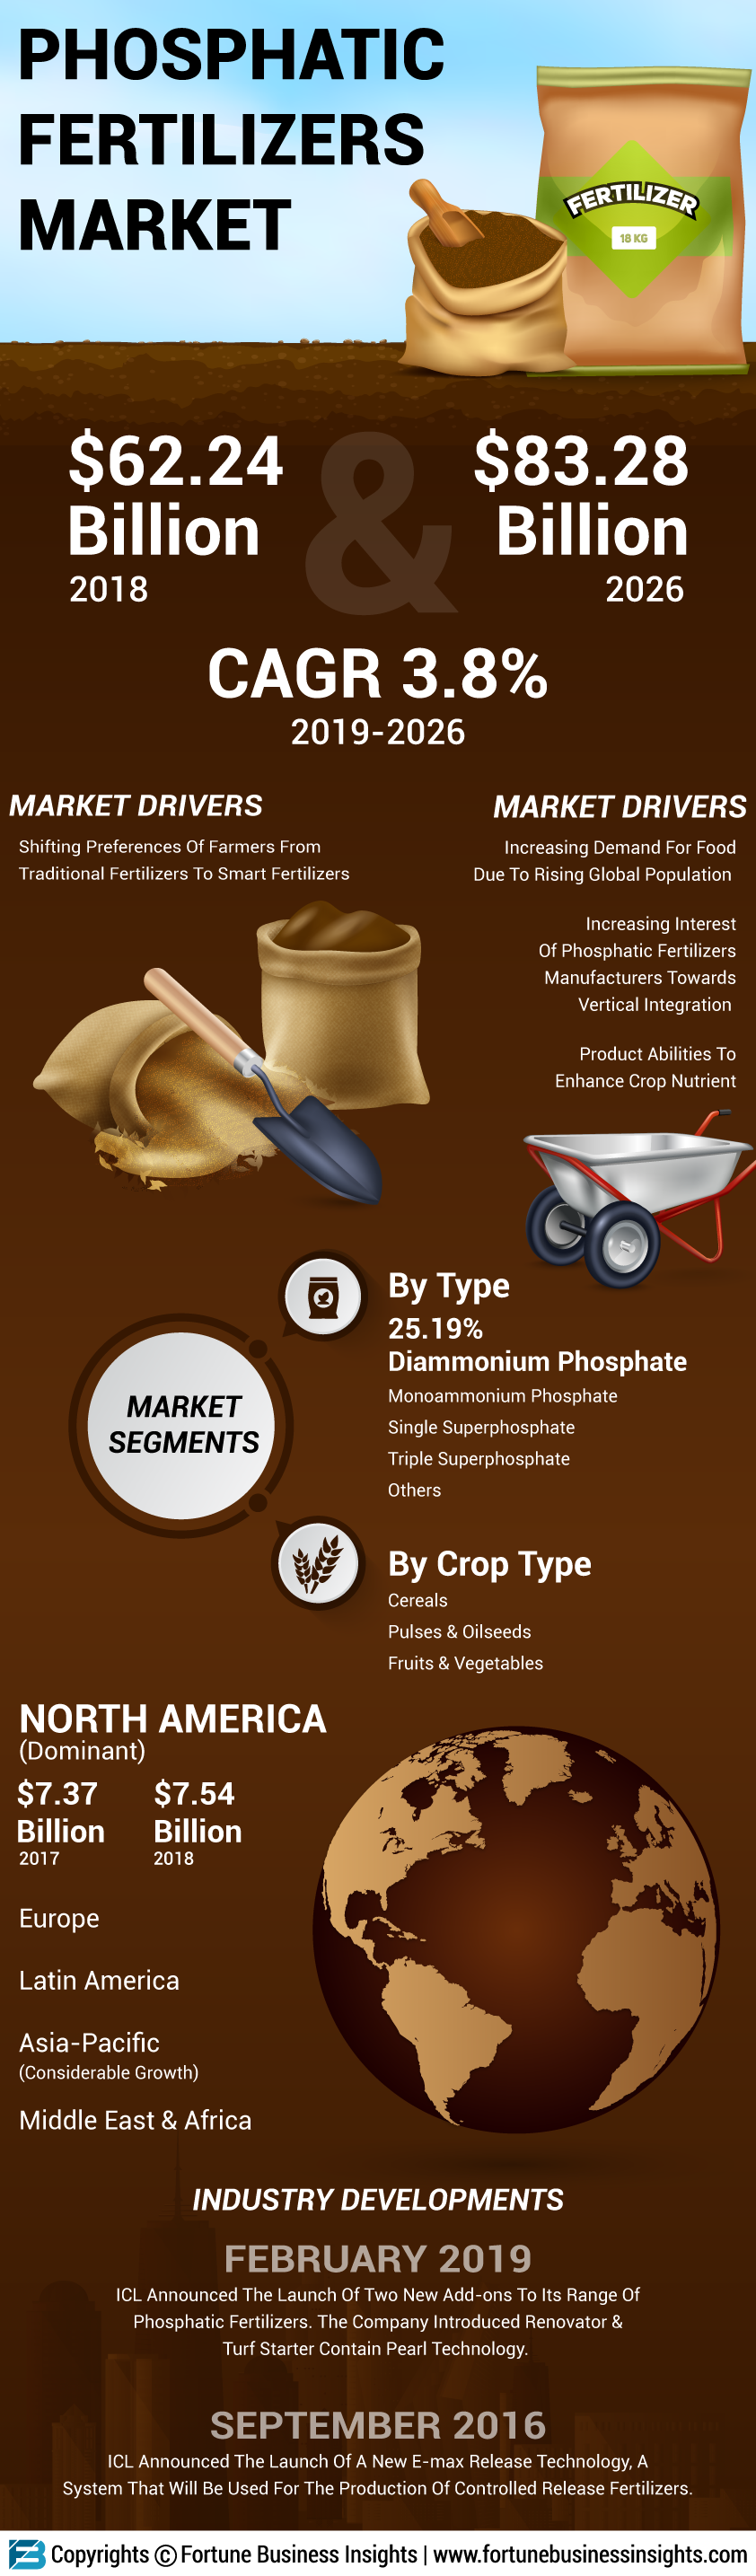 磷酸盐的化肥市场